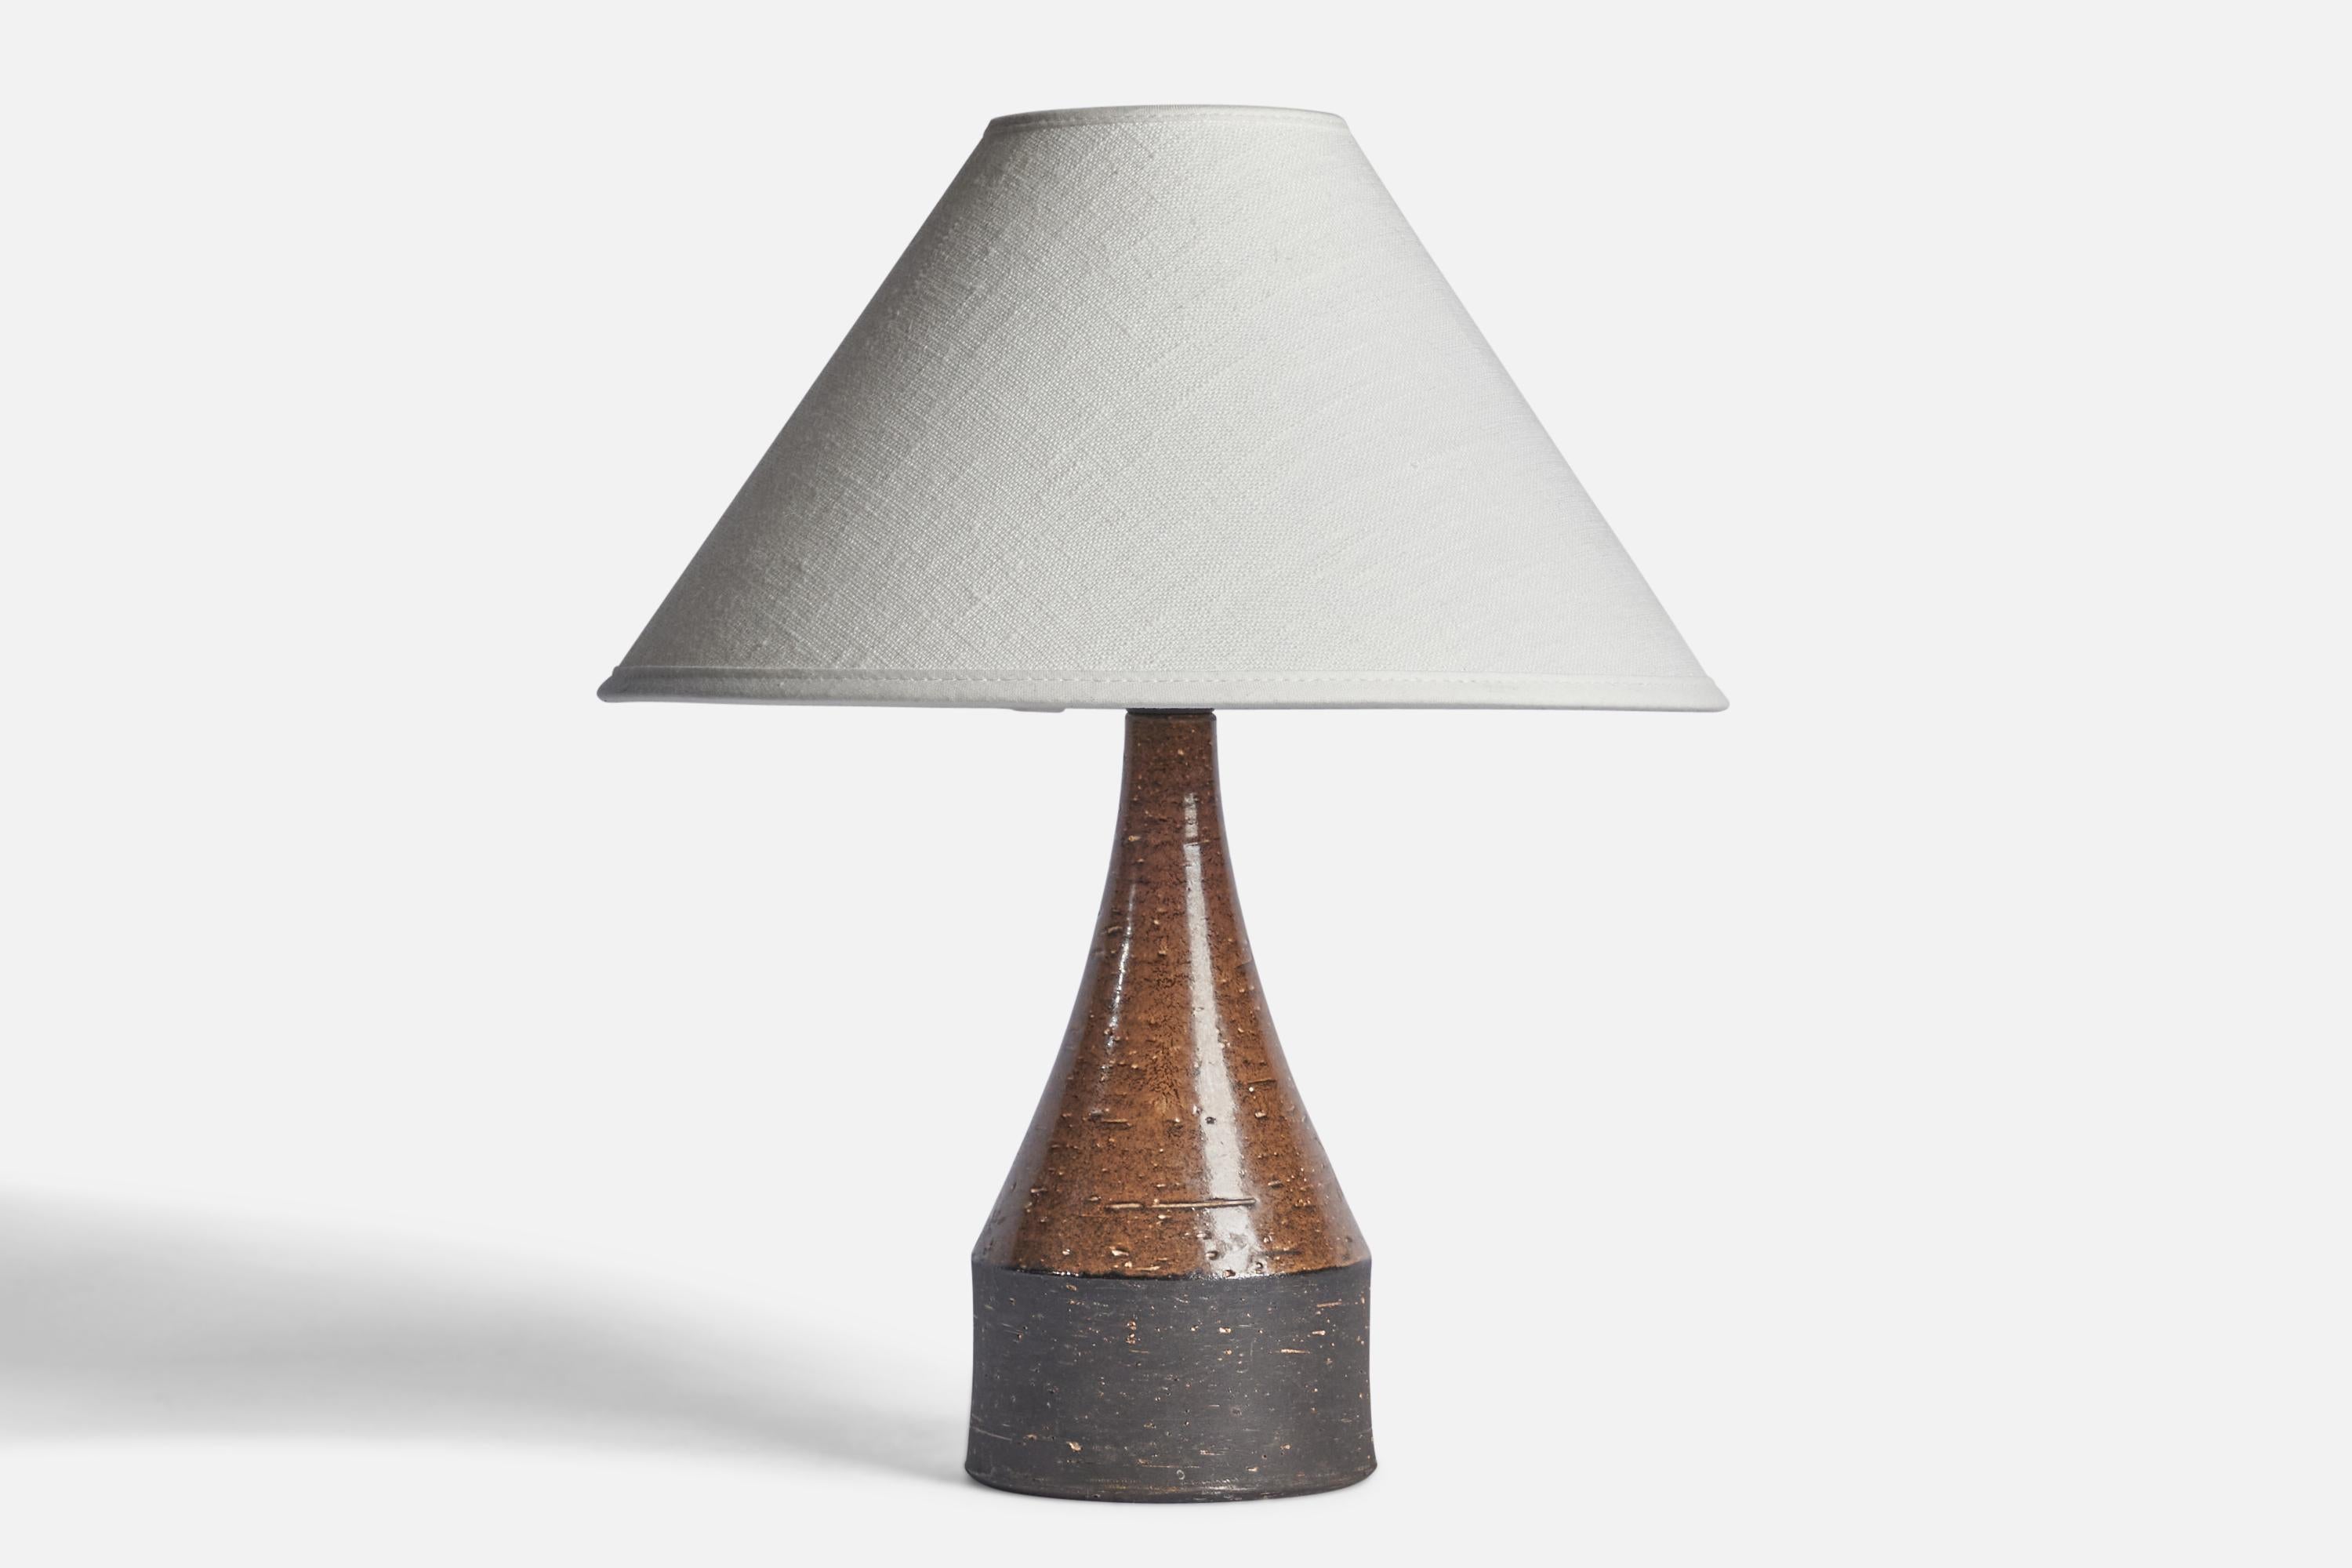 Tischlampe aus braunem und schwarz glasiertem Steingut, entworfen und hergestellt von Bo Bergström, Schweden, 1960er Jahre.

Abmessungen der Lampe (Zoll): 9